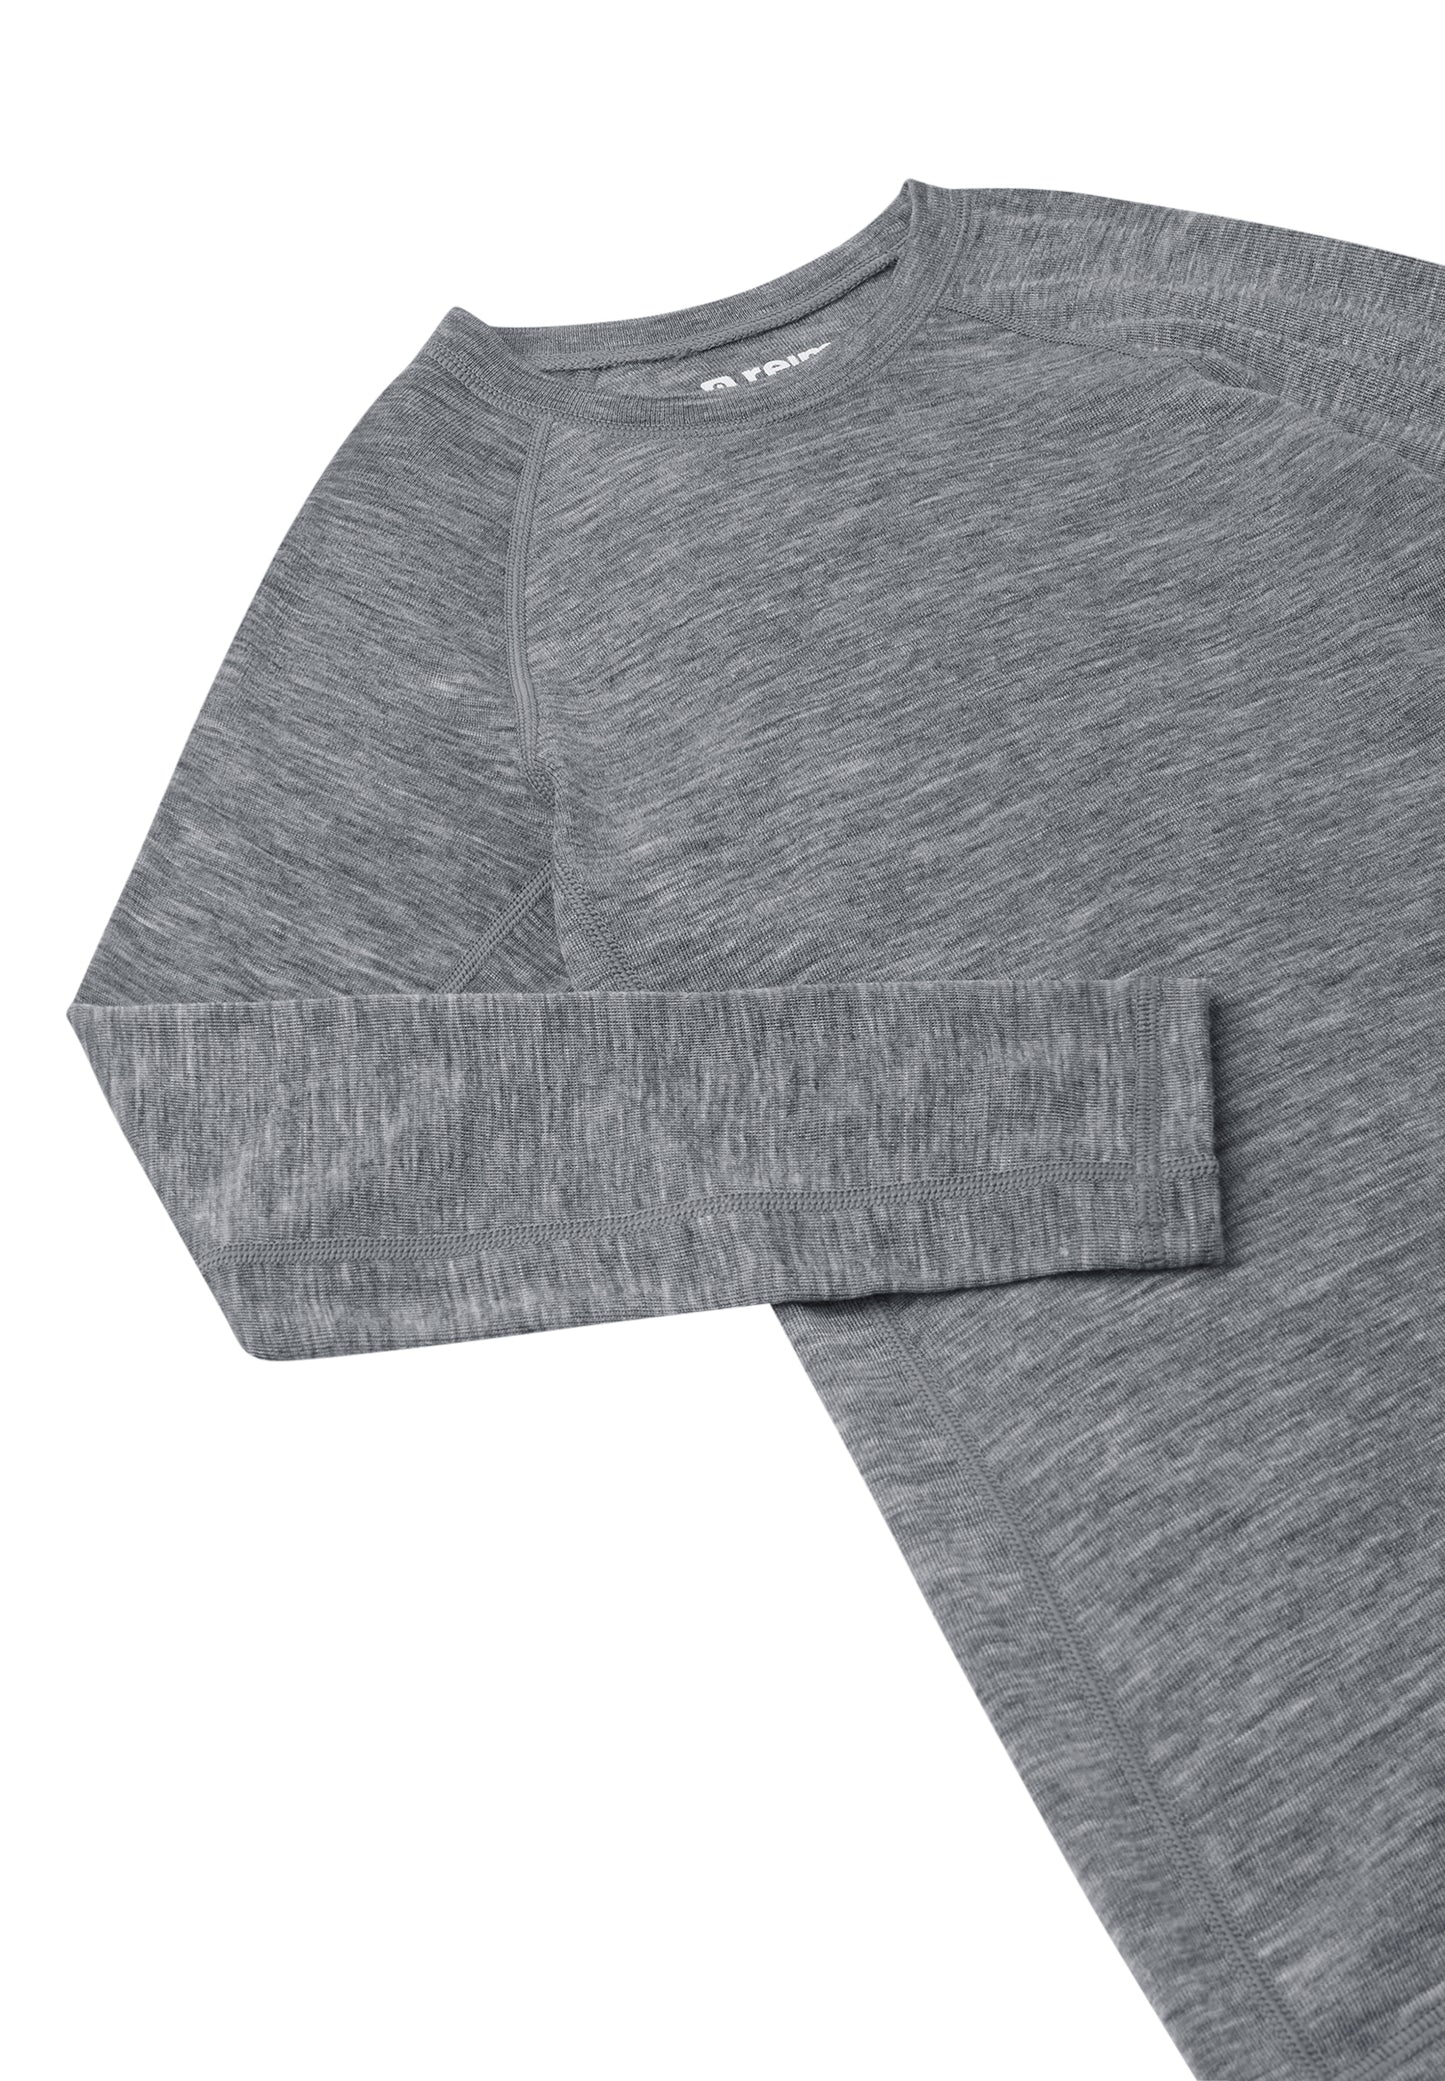 REIMA Thermo-Set Shirt+Hose Merinowolle/Tencel-Lyocell<br> Kinsei<br> Gr. 80 bis 160 <br> Merino/Tencel <br>natürlich&temperaturausgleichend<br> warm, 180g/m2 Dicke